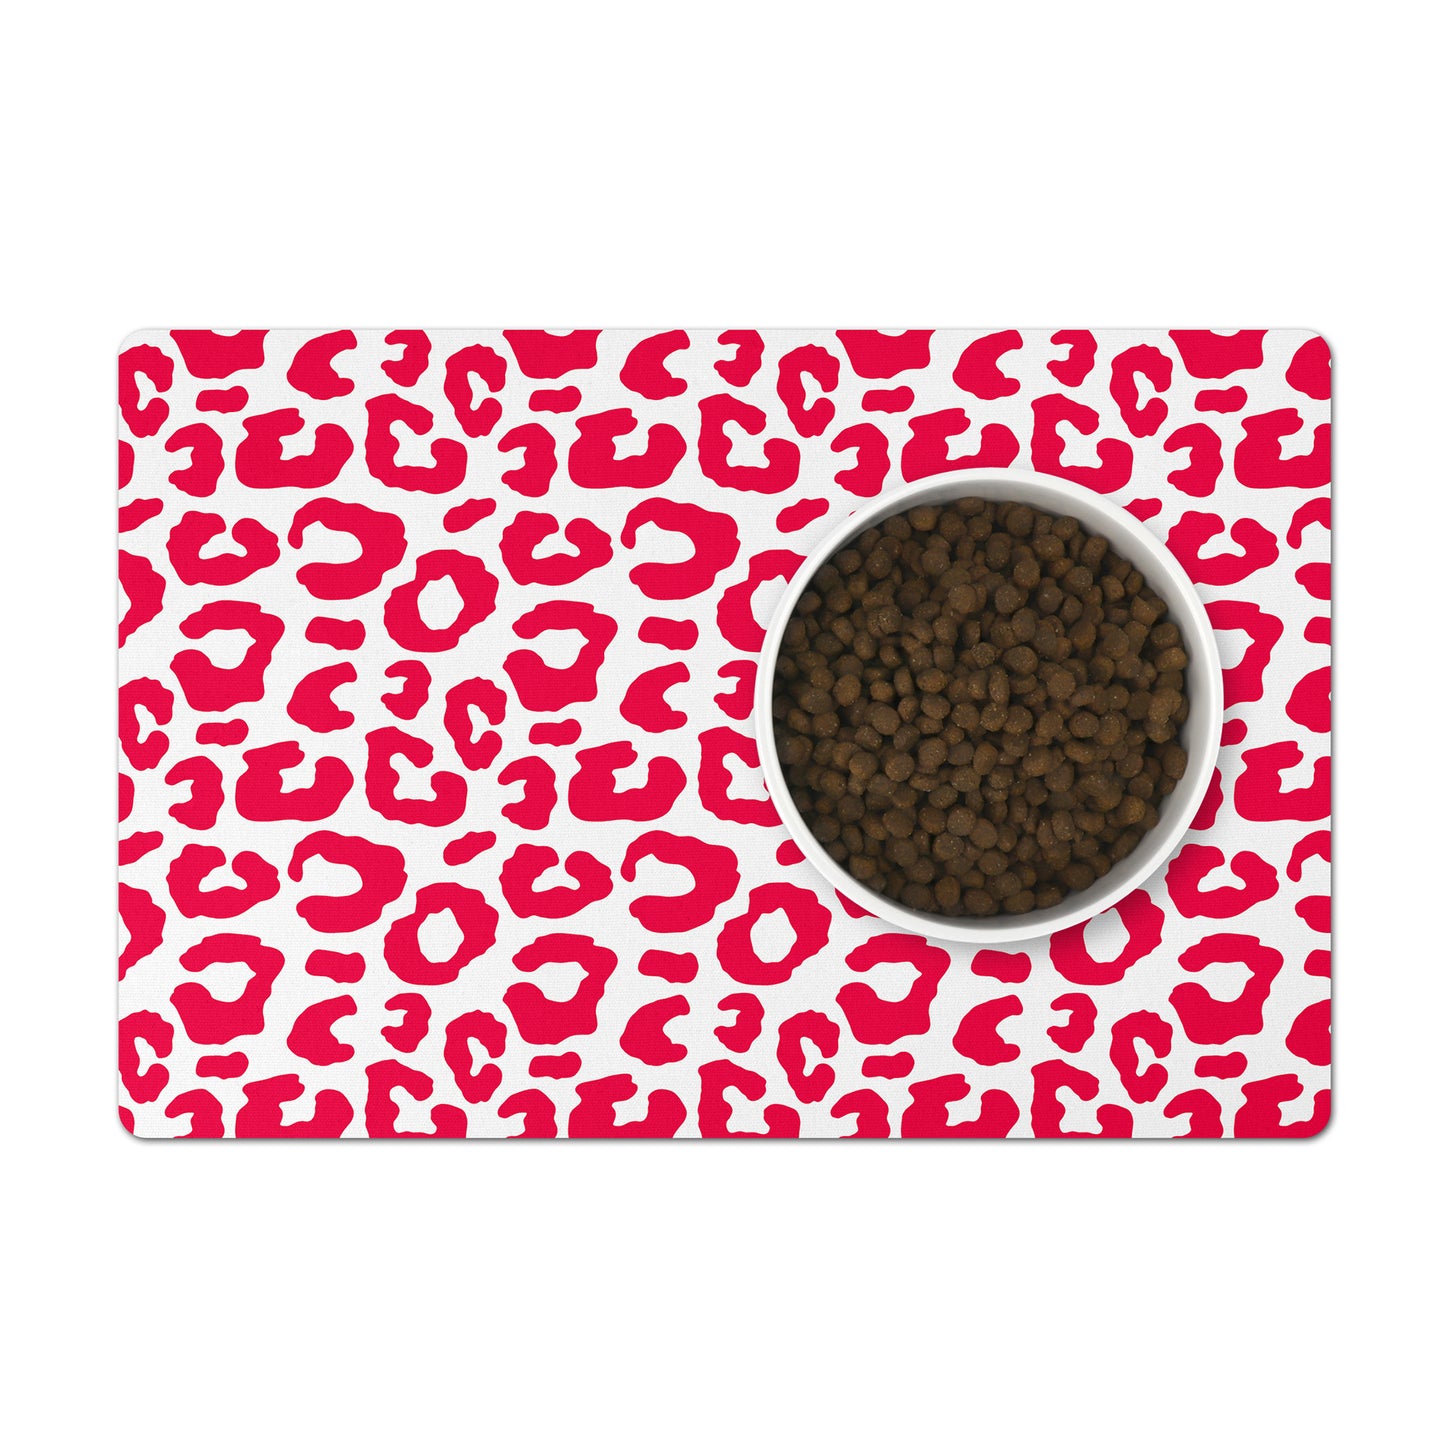 Hot pink pet accessories, leopard pet feeding mat